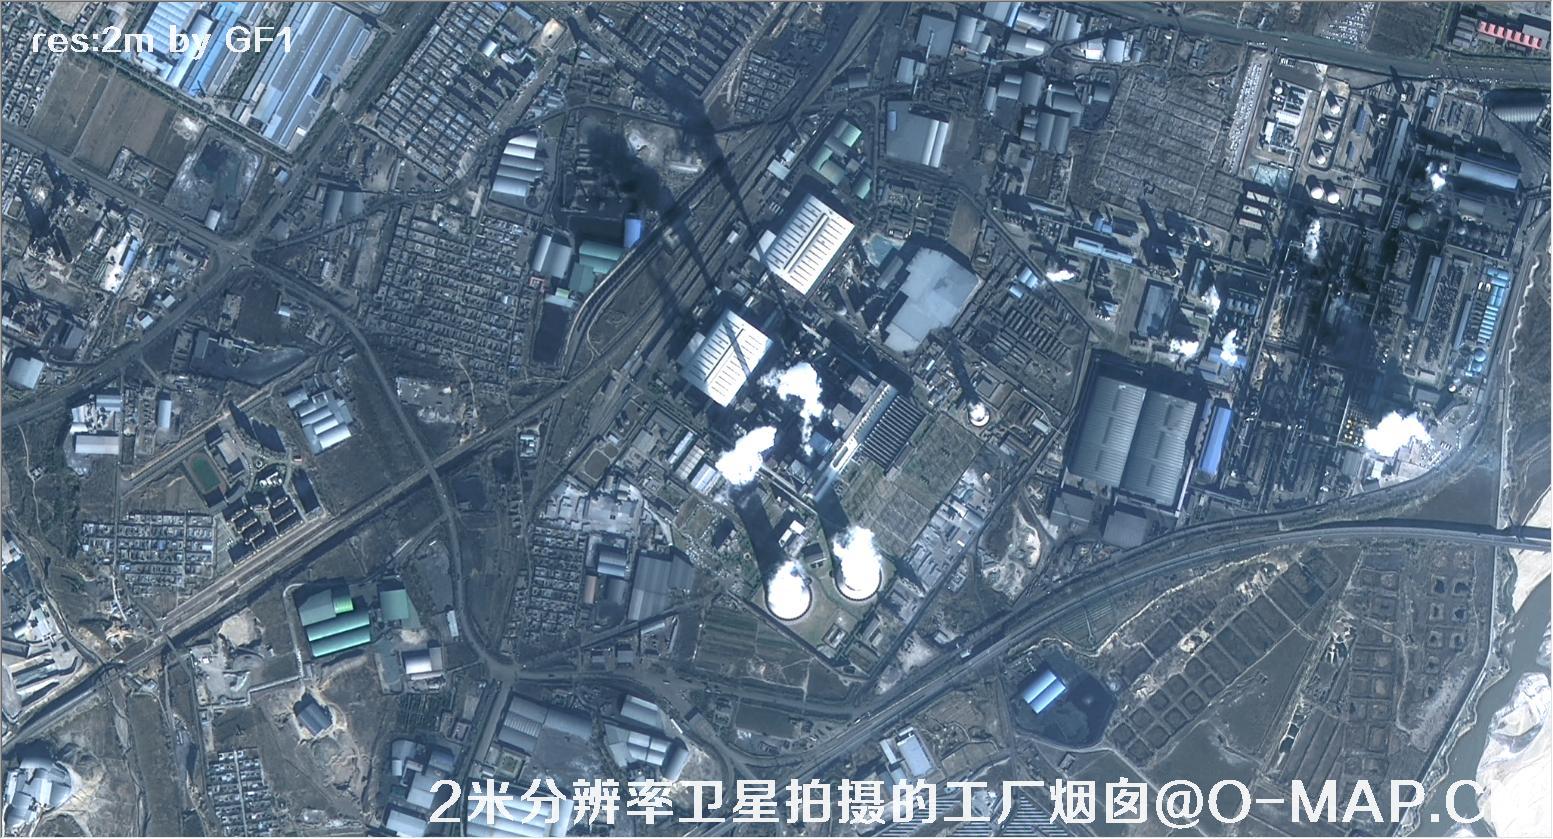 2米分辨率卫星拍摄的工厂烟囱